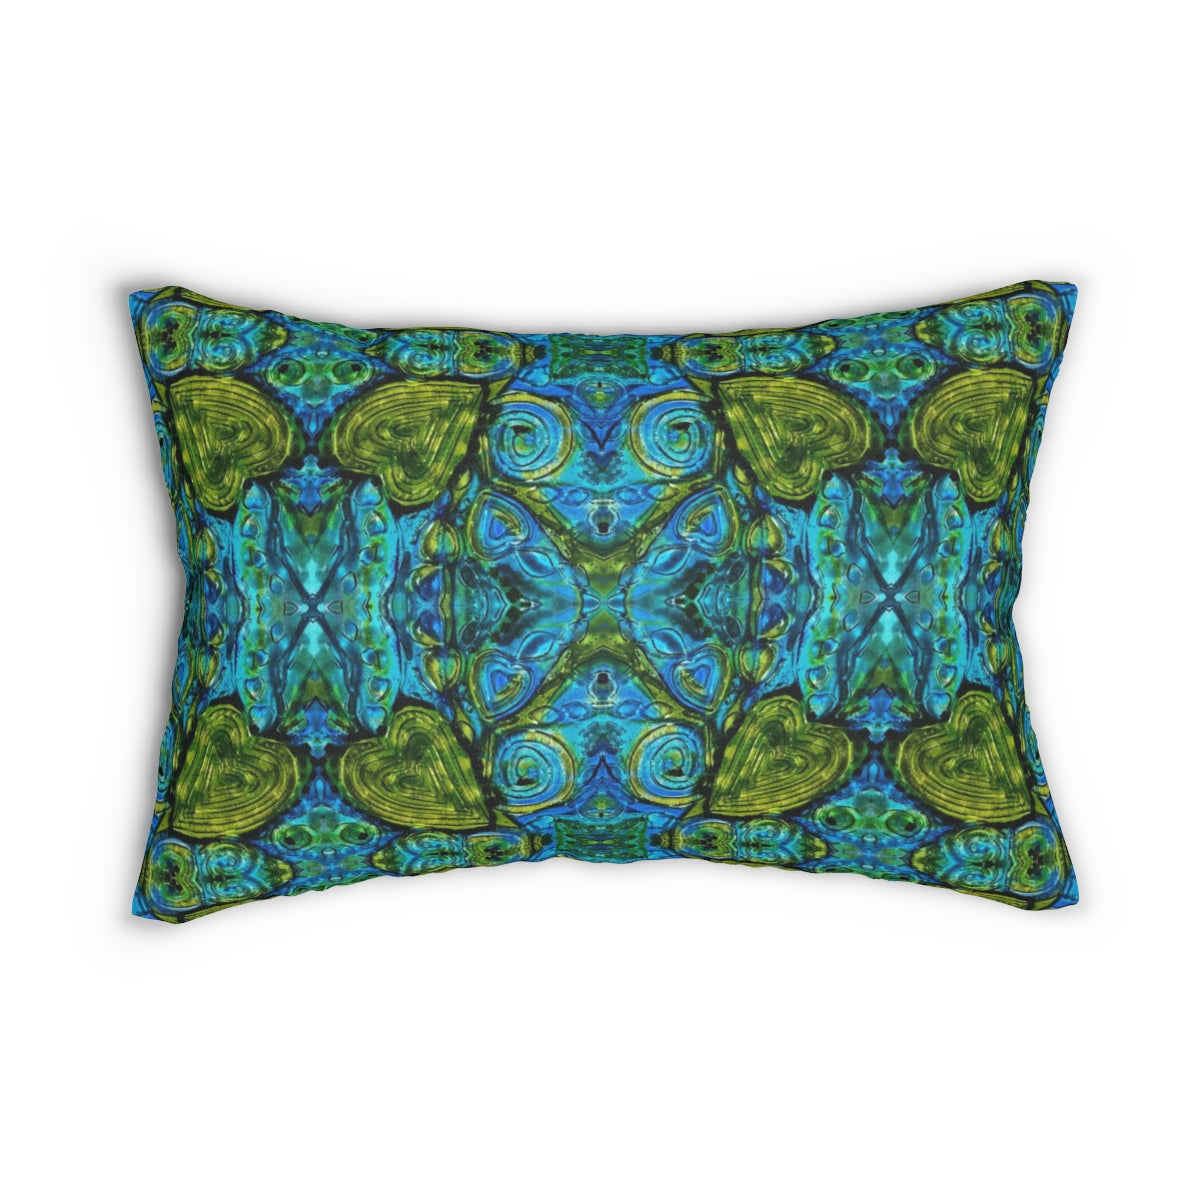 Wild Heart Lumbar throw pillow in blue green